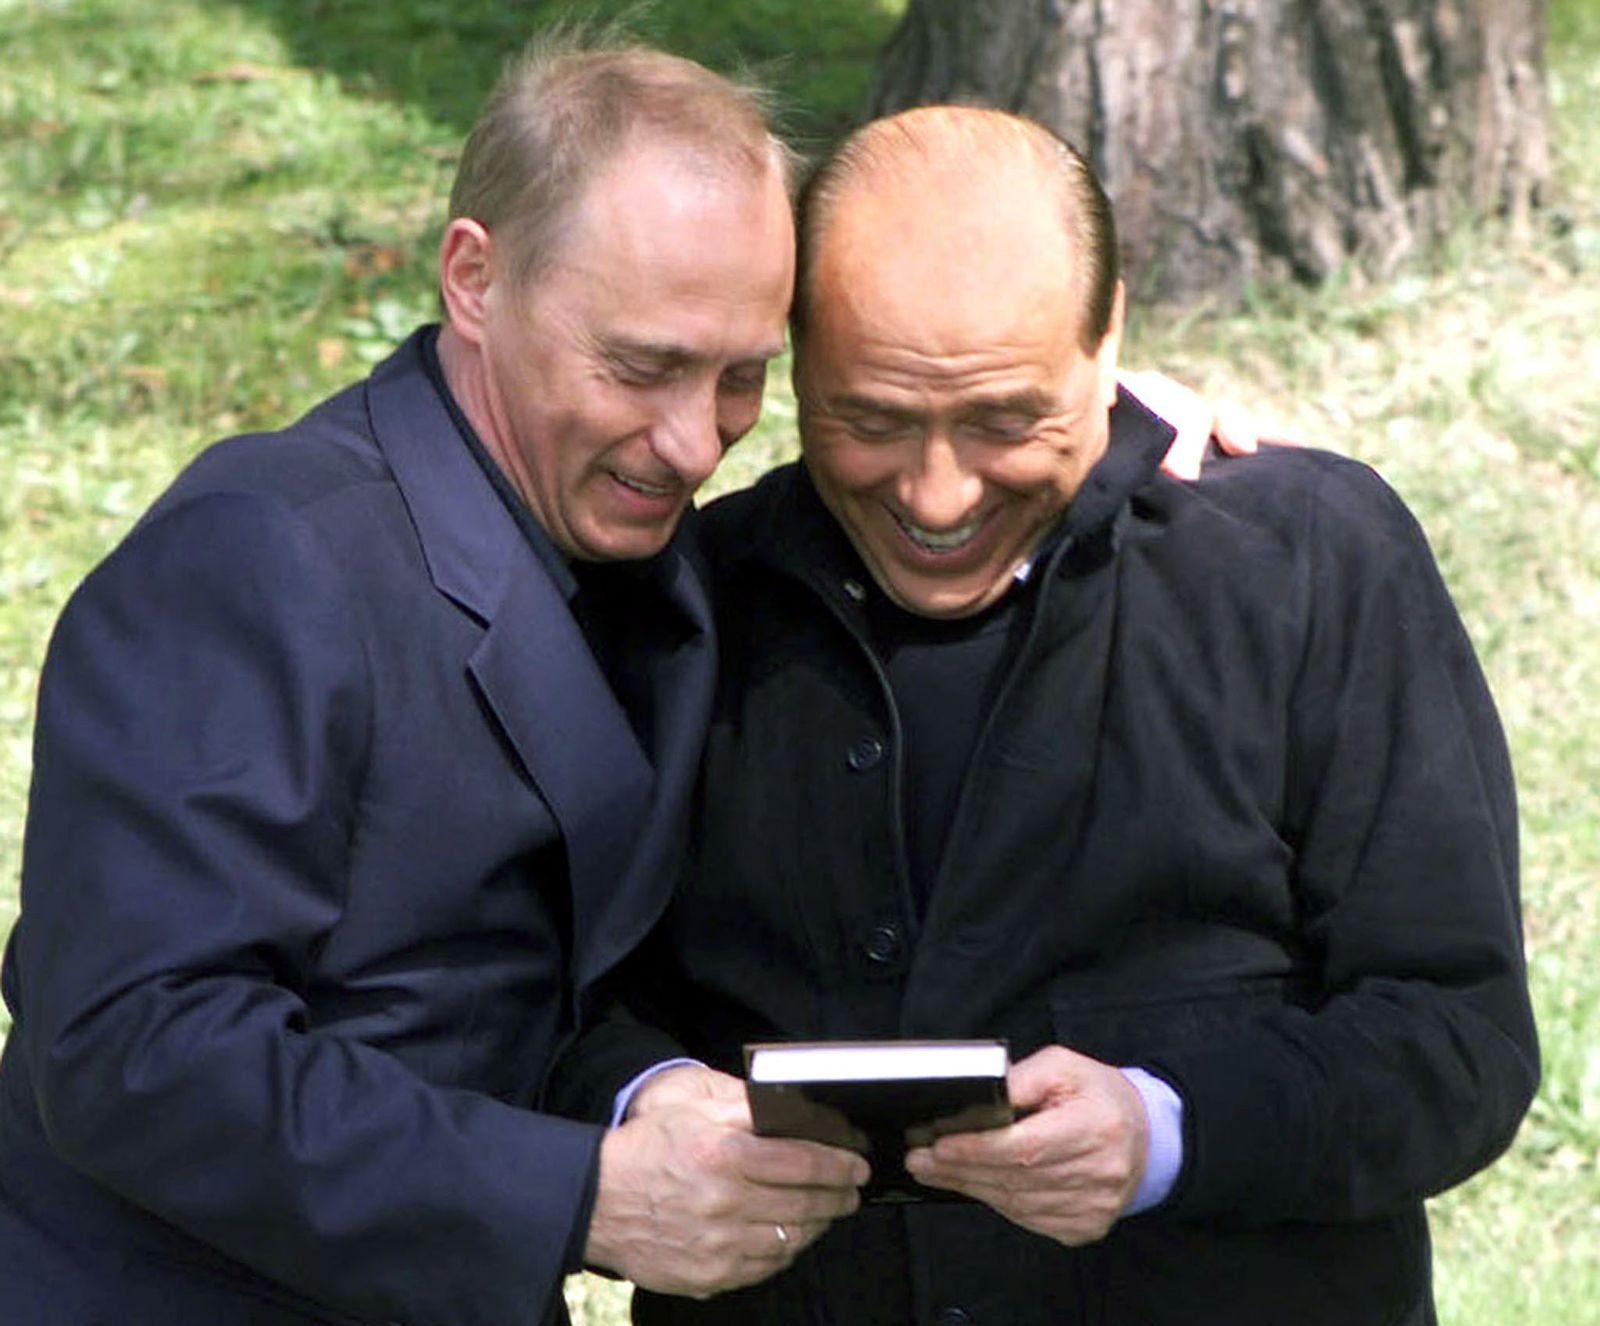 الرئيس الروسي فلاديمير بوتين يقدّم لرئيس الوزراء الإيطالي السابق سيلفيو برلوسكوني كتاباً روسياً عن الحياة السياسية للأخير، خلال لقائهما في منتجع سوتشي على البحر الأسود - 2 أبريل 2002 - REUTERS